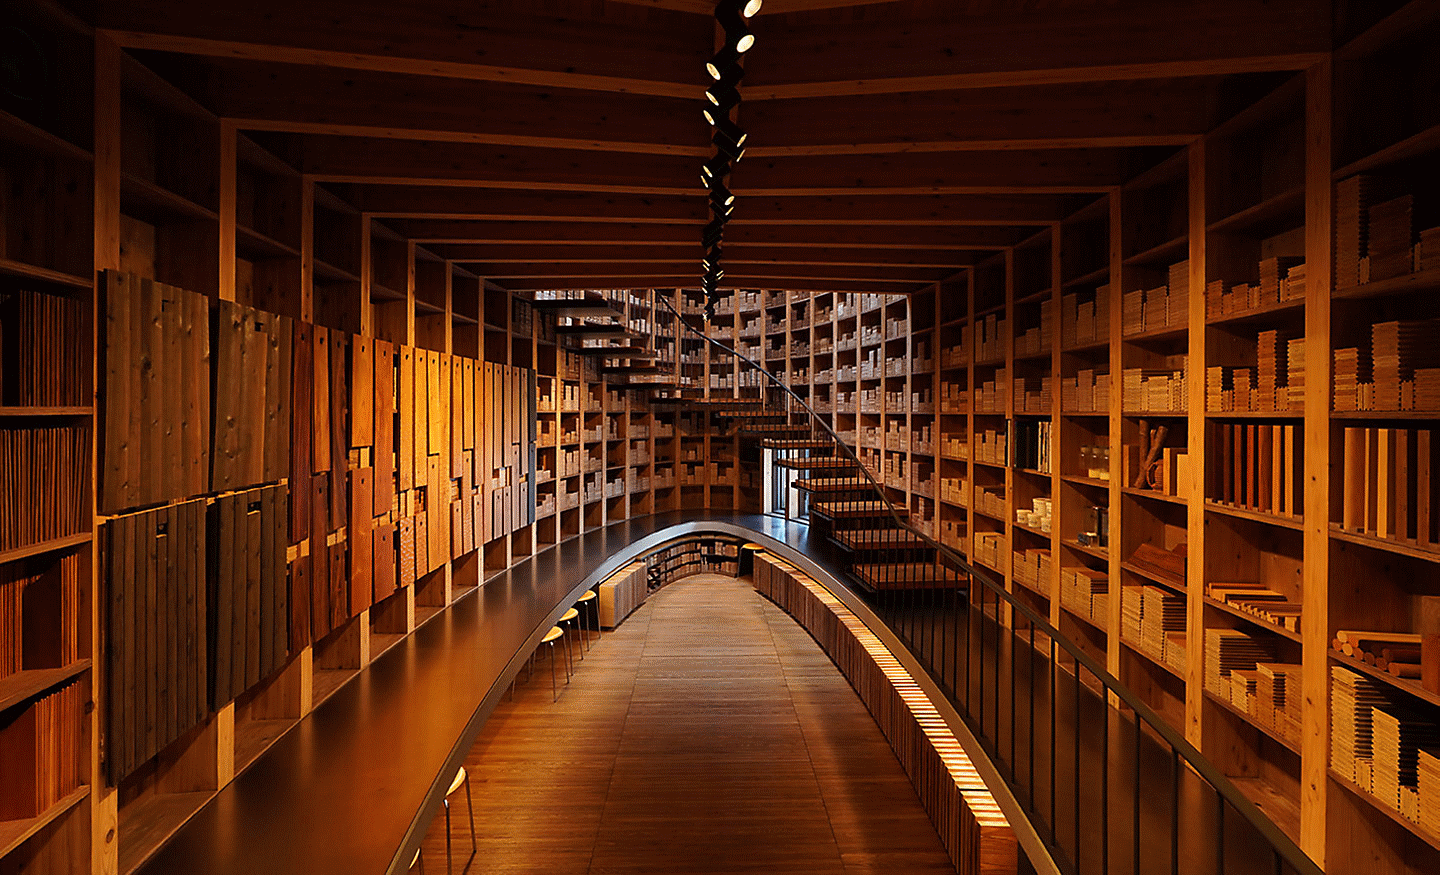 Imagem do interior de um edifício, com detalhes de alta definição